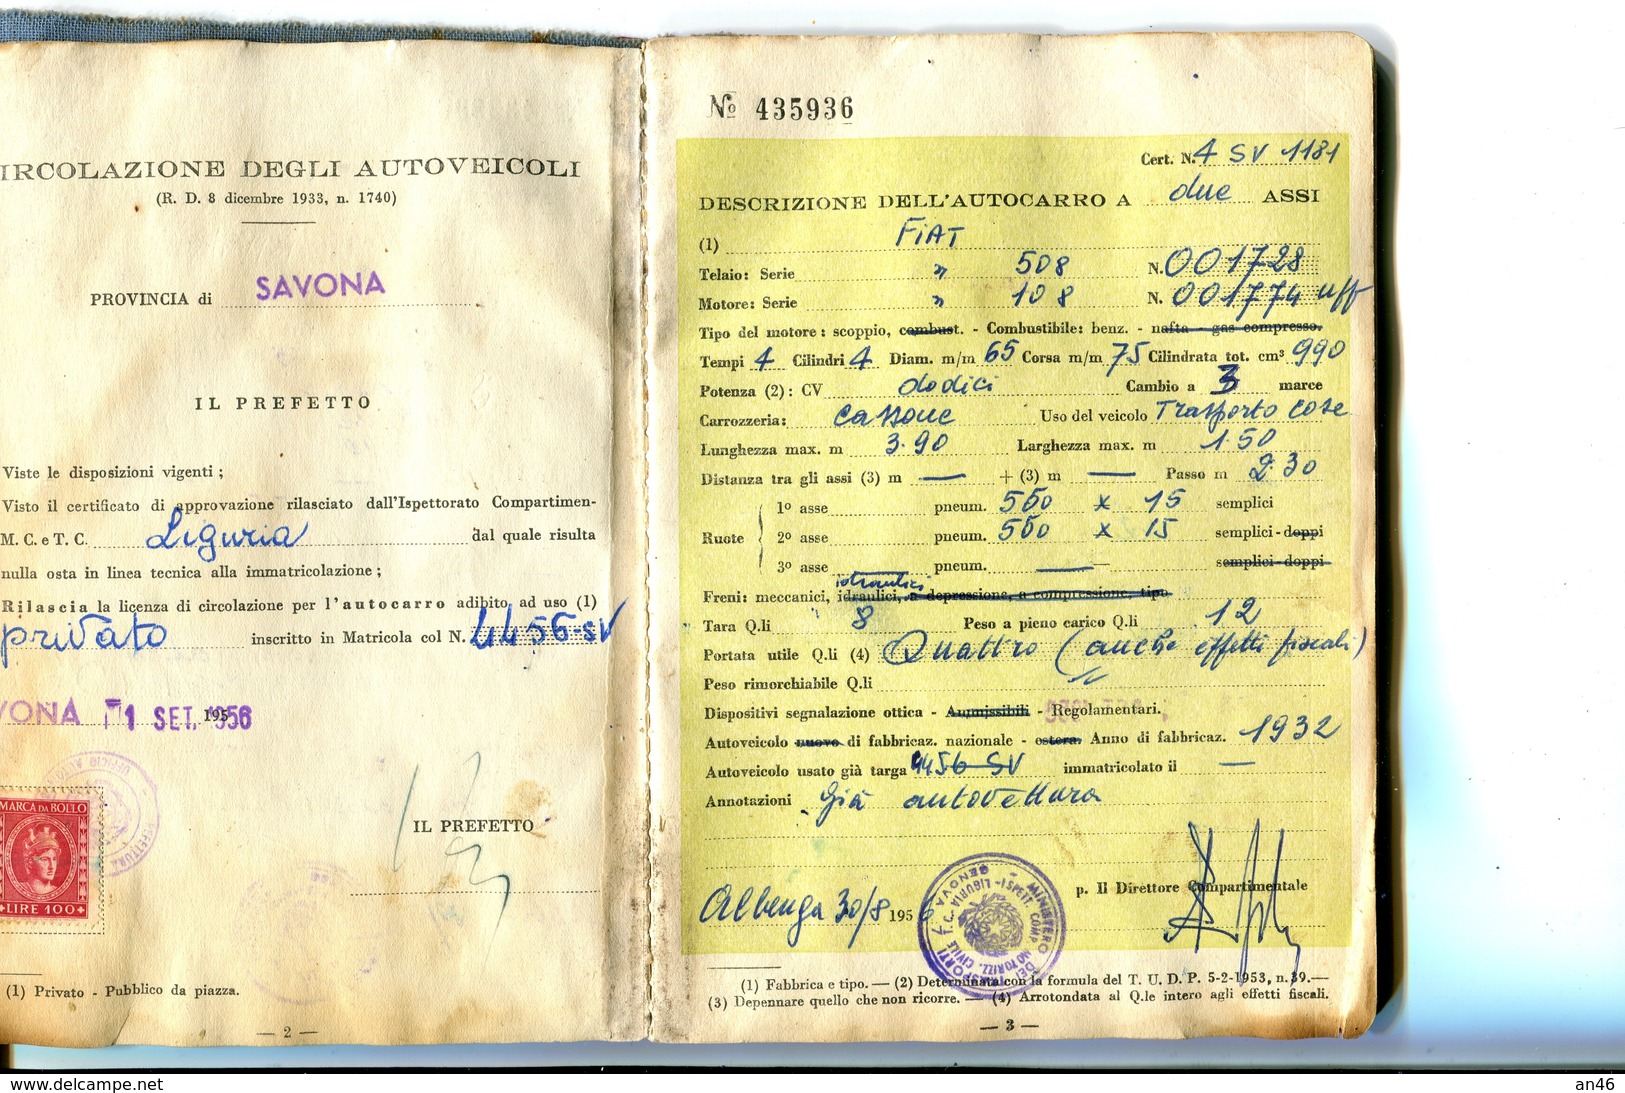 TESSERA_TESSERE_DOCUMENTO/I-"LICENZA PER CIRCOLAZIONE DI AUTOCARRO-MINISTERO TRASPORTI-SETT.1956- - Colecciones